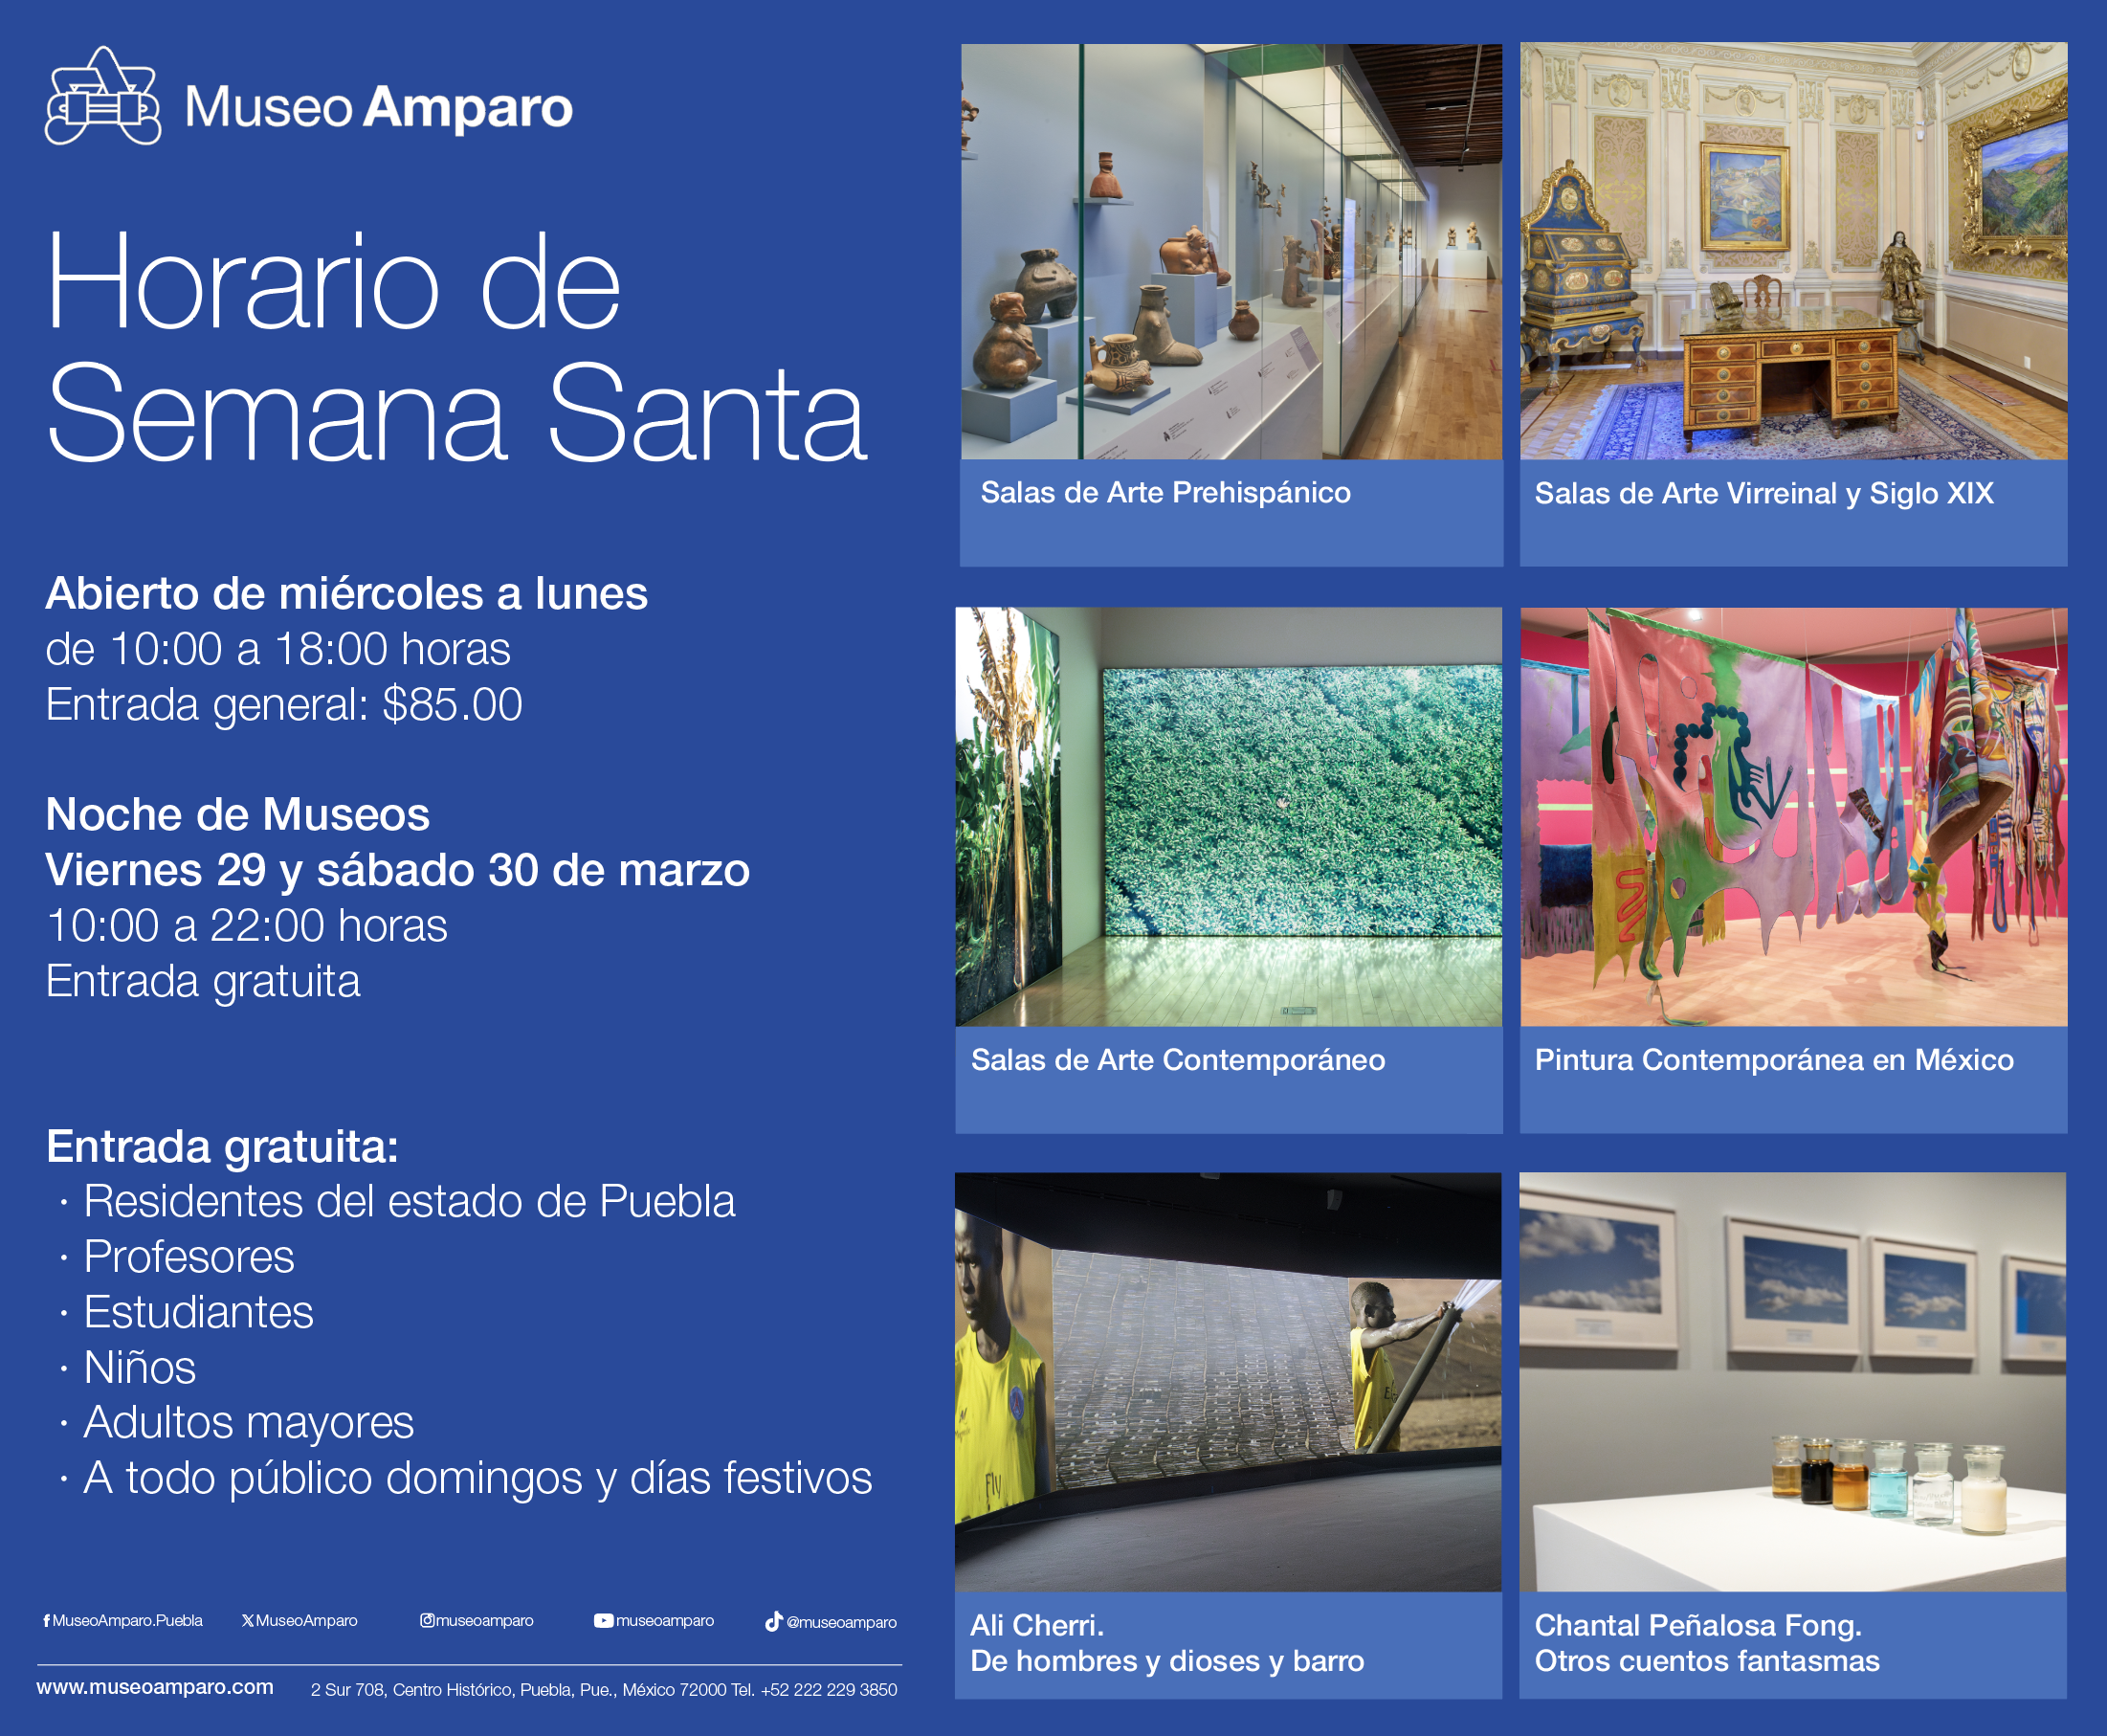 Horario de Semana Santa: Museo Amparo